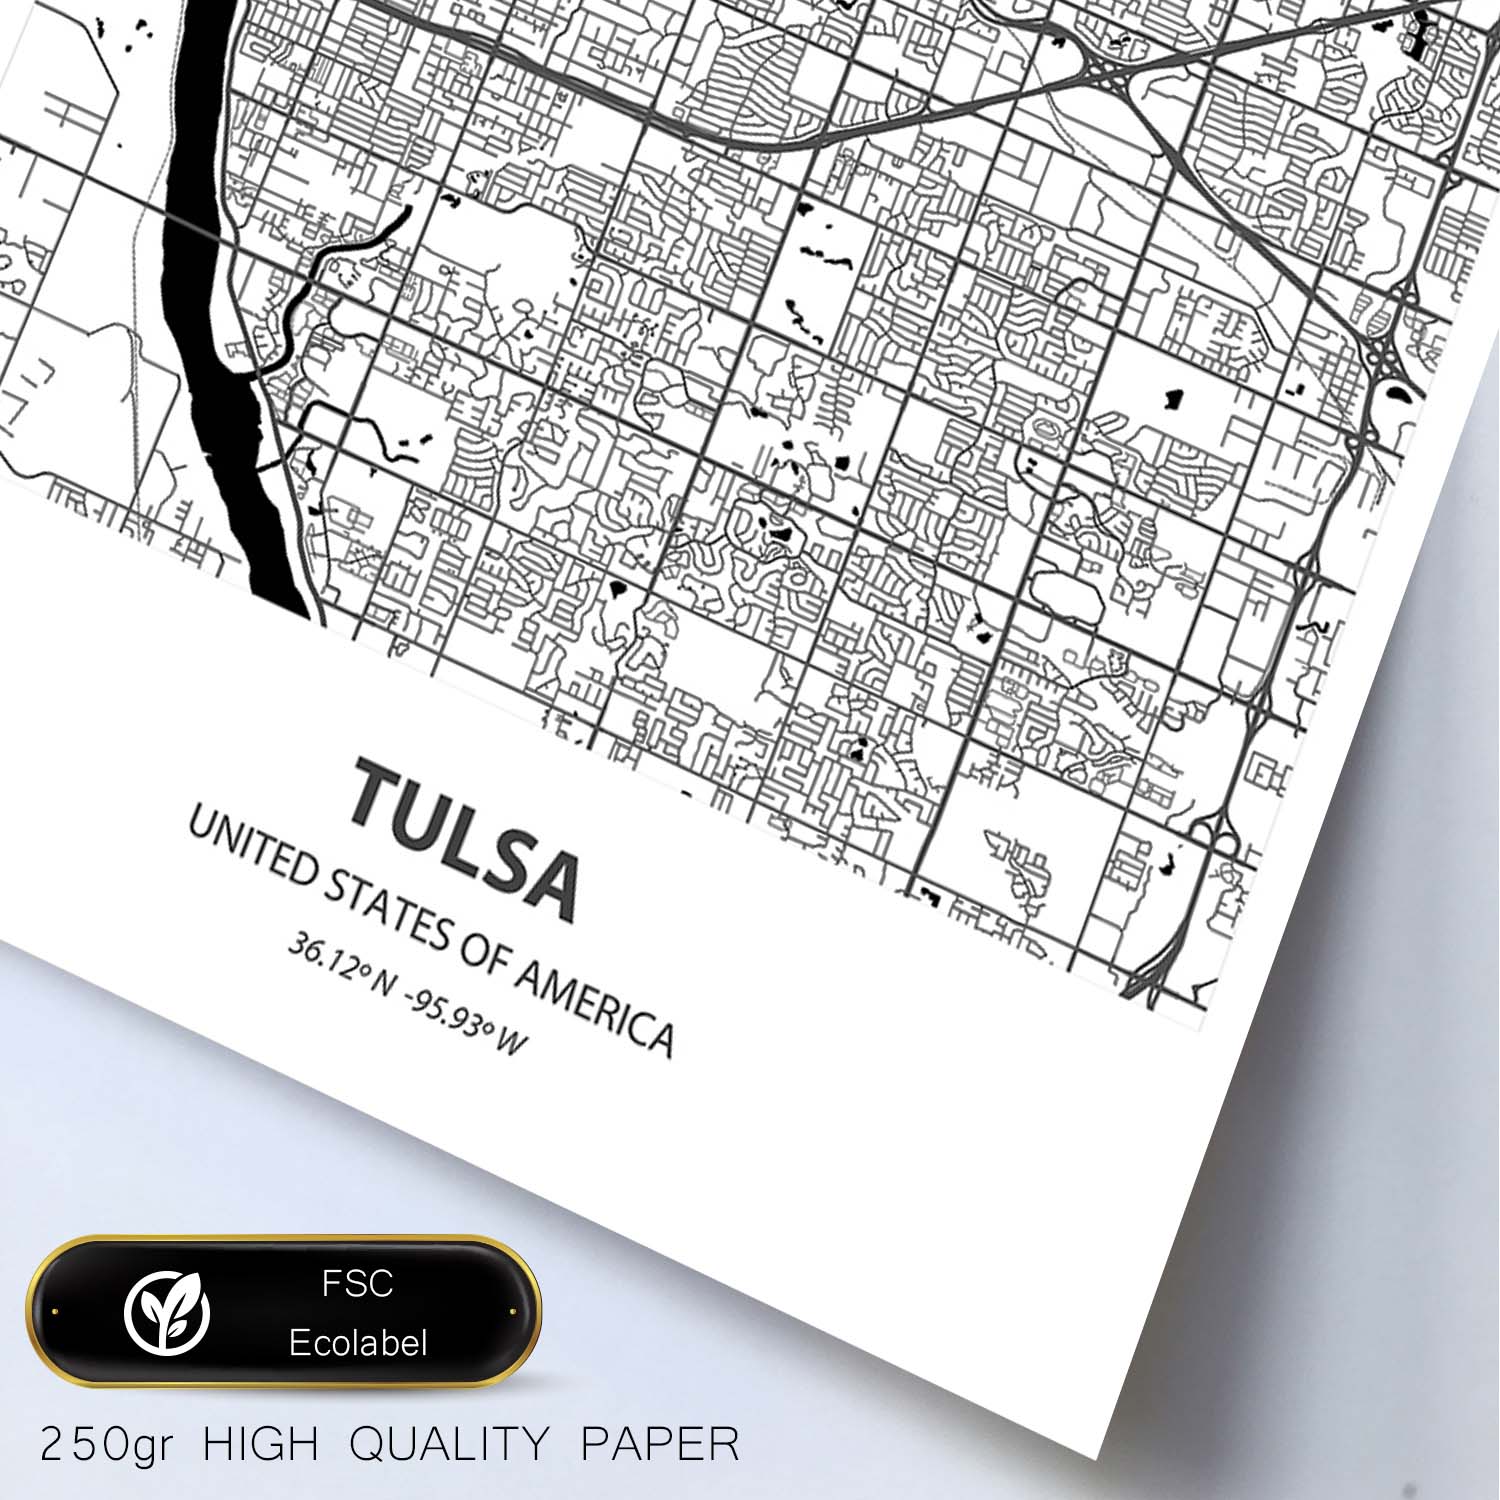 Poster con mapa de Tulsa - USA. Láminas de ciudades de Estados Unidos con mares y ríos en color negro.-Artwork-Nacnic-Nacnic Estudio SL